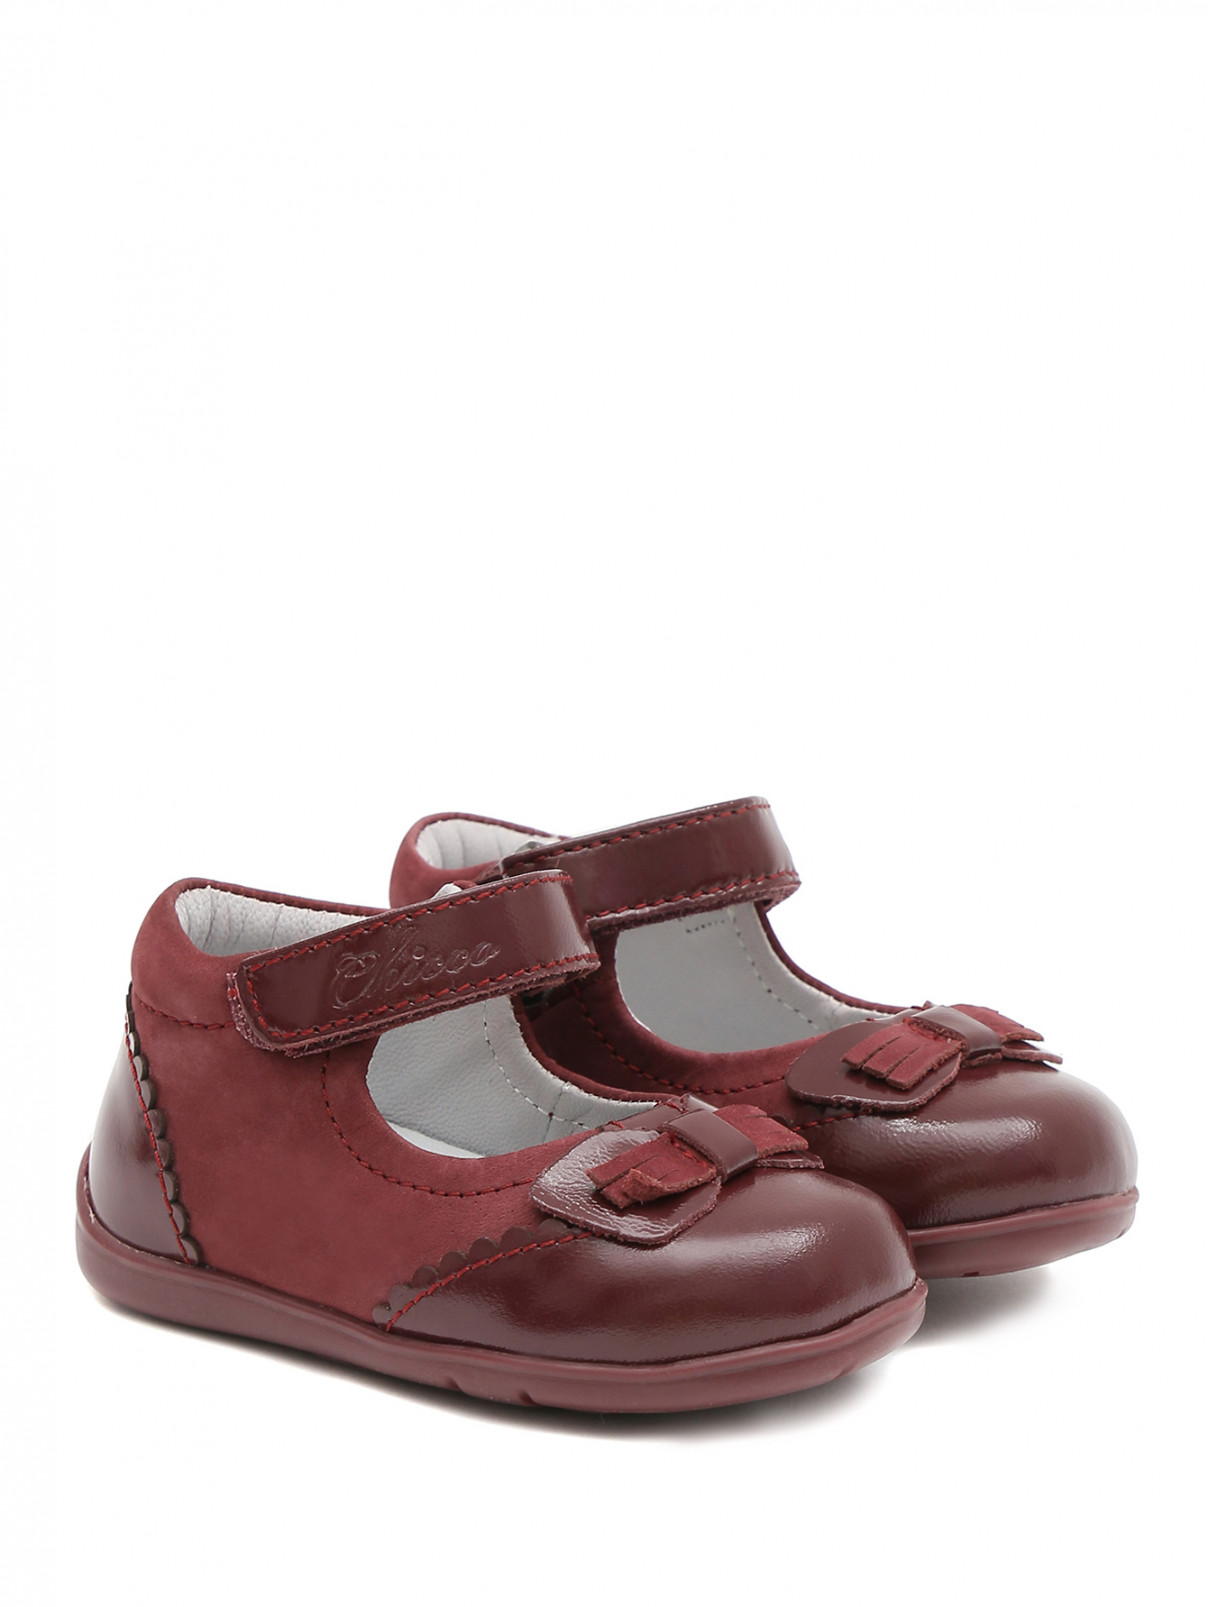 Кожаные туфли с бантиком Chicco  –  Общий вид  – Цвет:  Красный